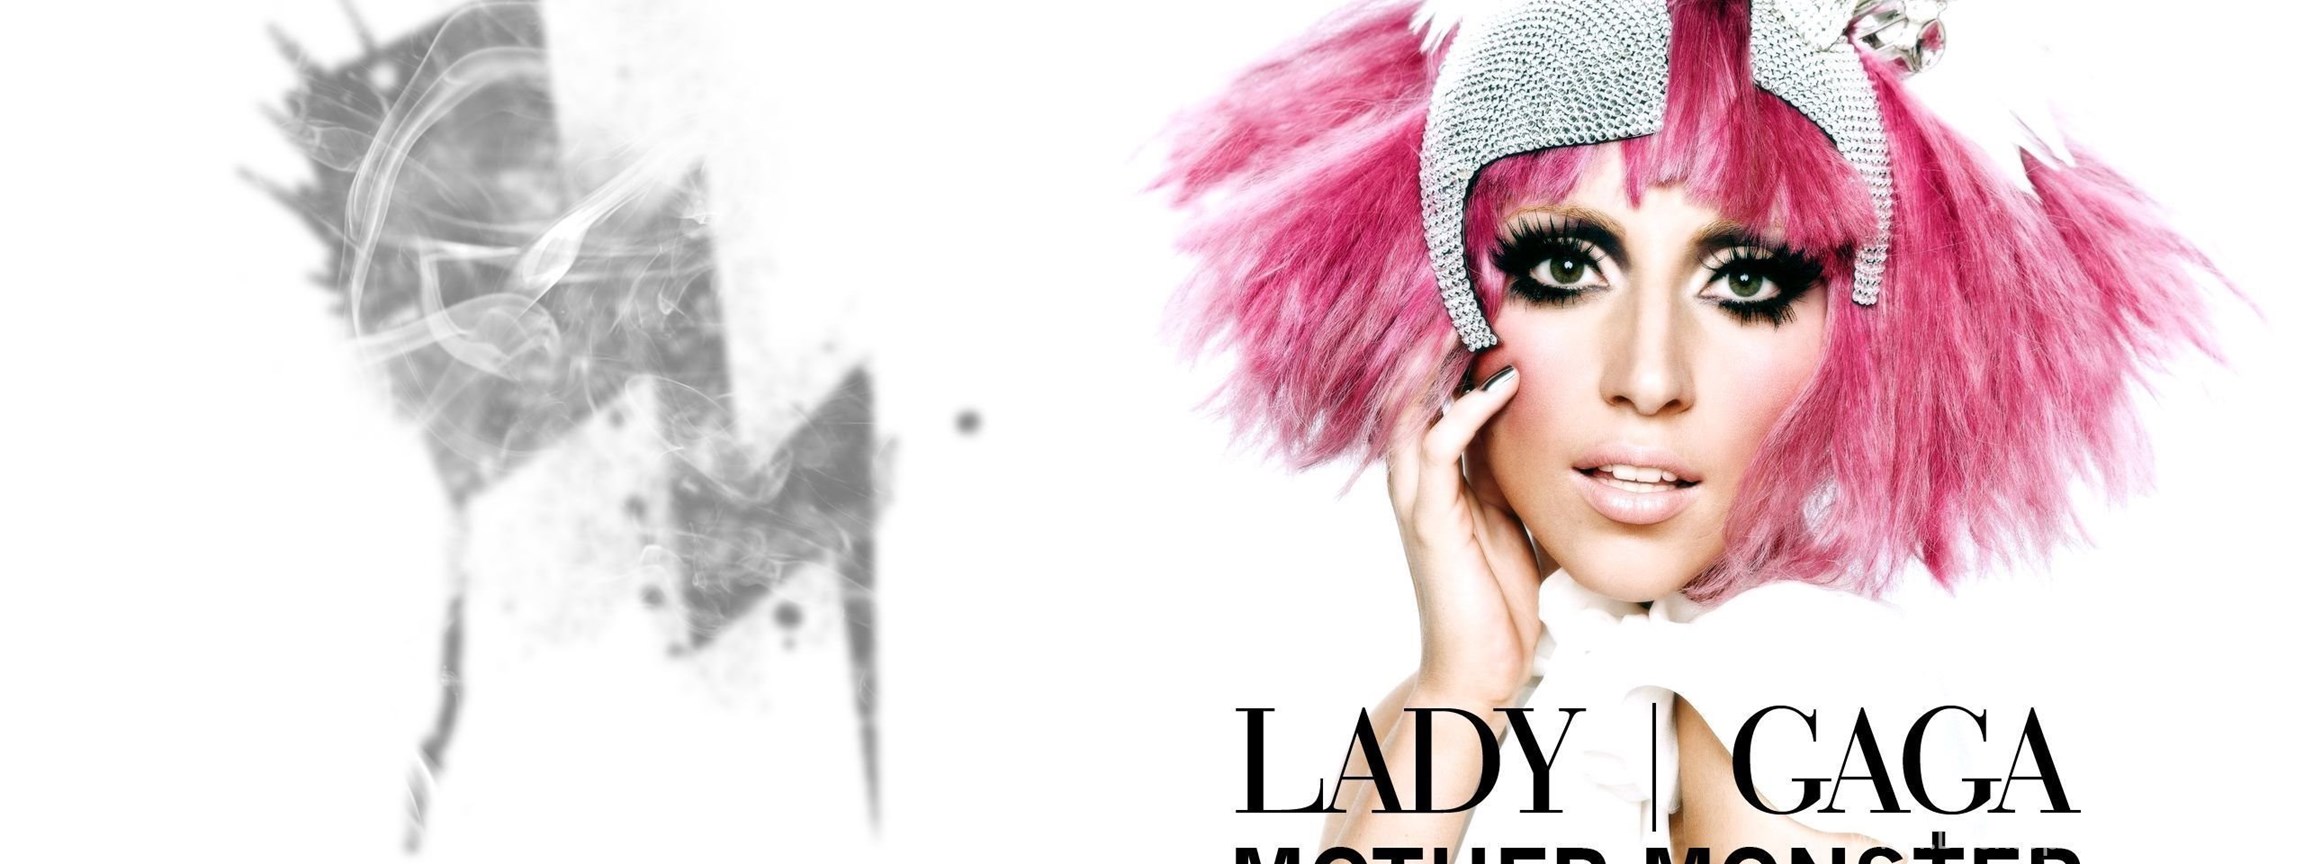 Леди гага на английском. Lady Gaga Godmother. Леди Гага обложка альбома в шляпе. Обои леди Гага нарисованные. Americano обложка песни леди Гага.